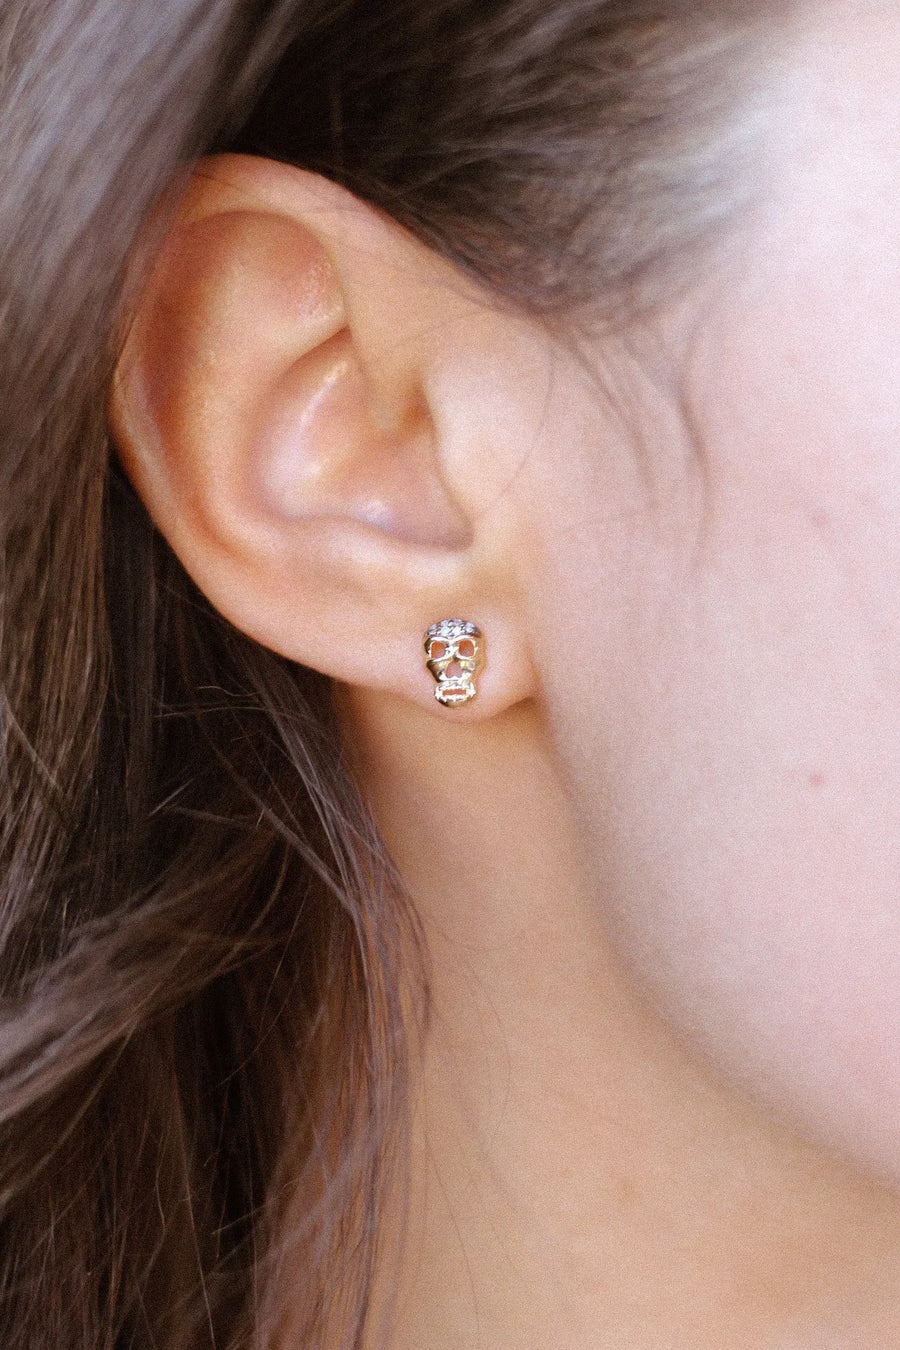 Petite Skull Post Earrings with White & Black Diamonds - White Gold On Ear